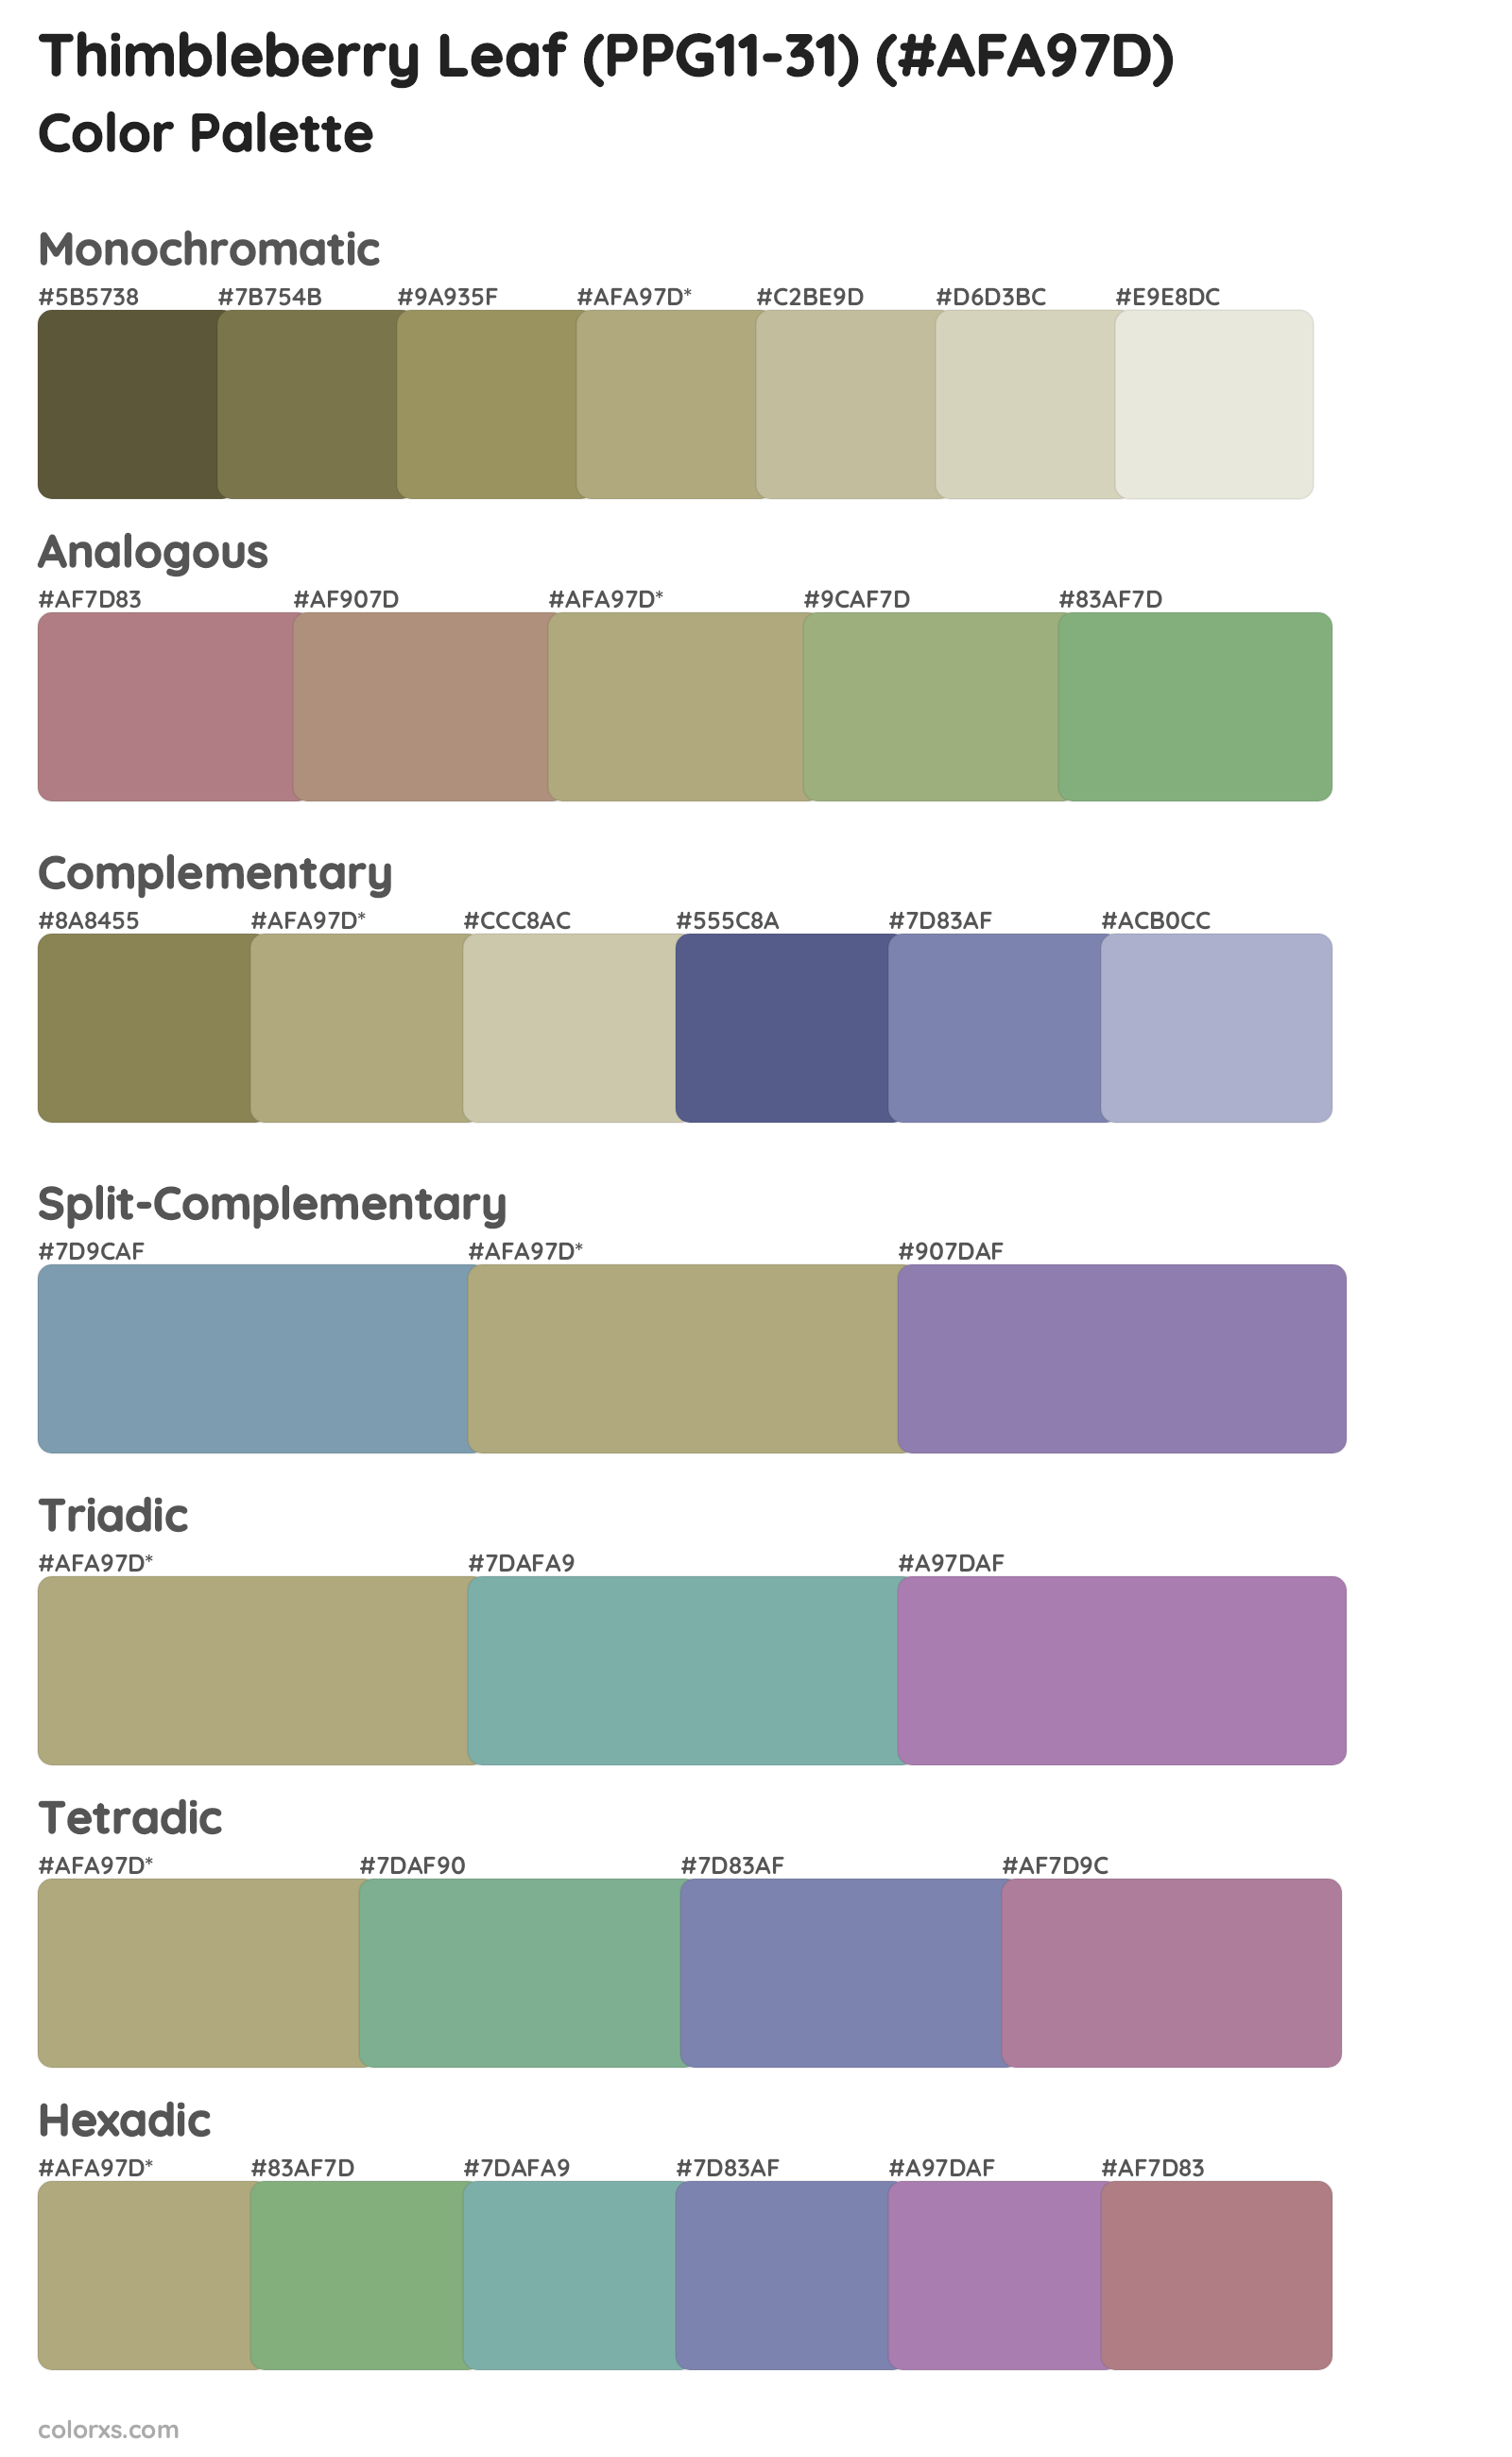 Thimbleberry Leaf (PPG11-31) Color Scheme Palettes